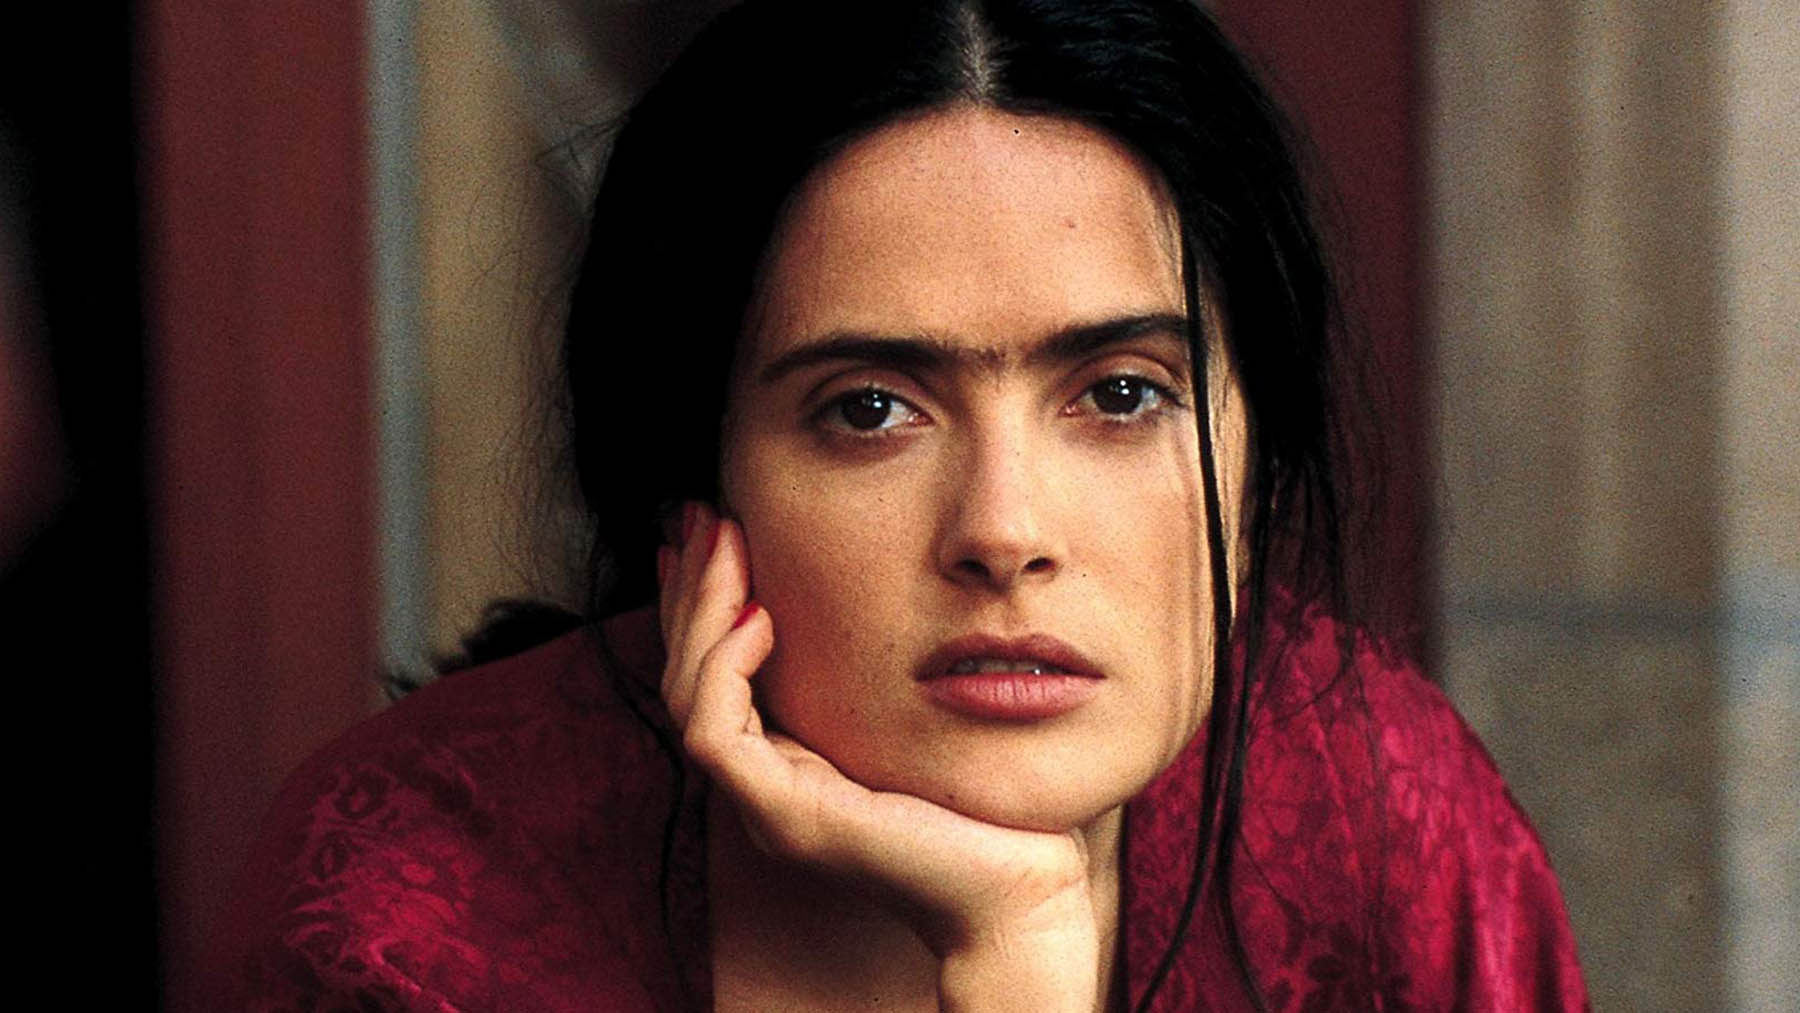 Las mejores frases de Frida Kahlo sobre la mujer